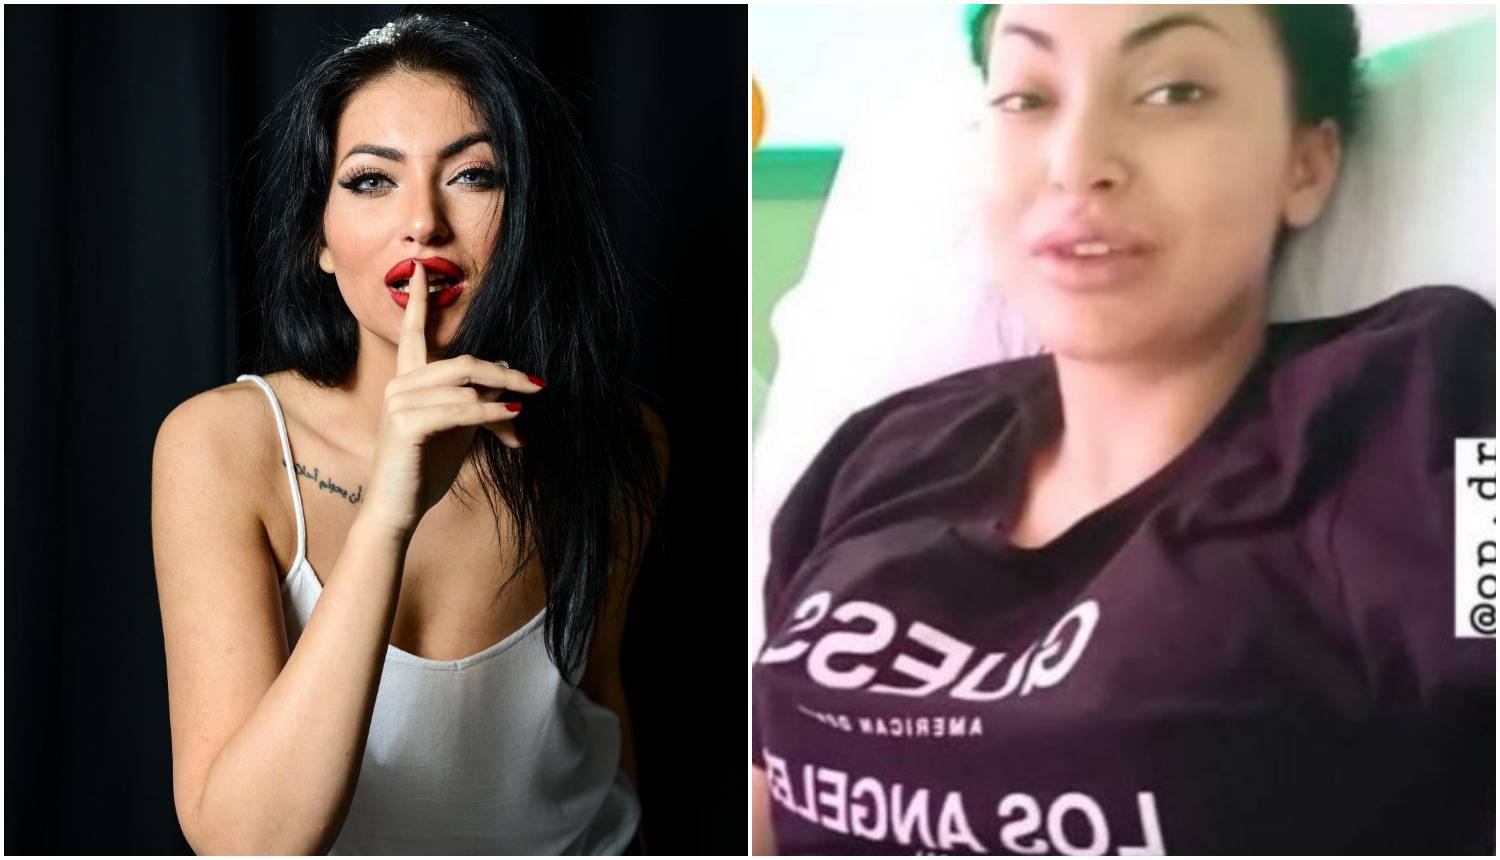 Hana Rodić poslije operacije grudi: 'Jedna mi je bila manja'